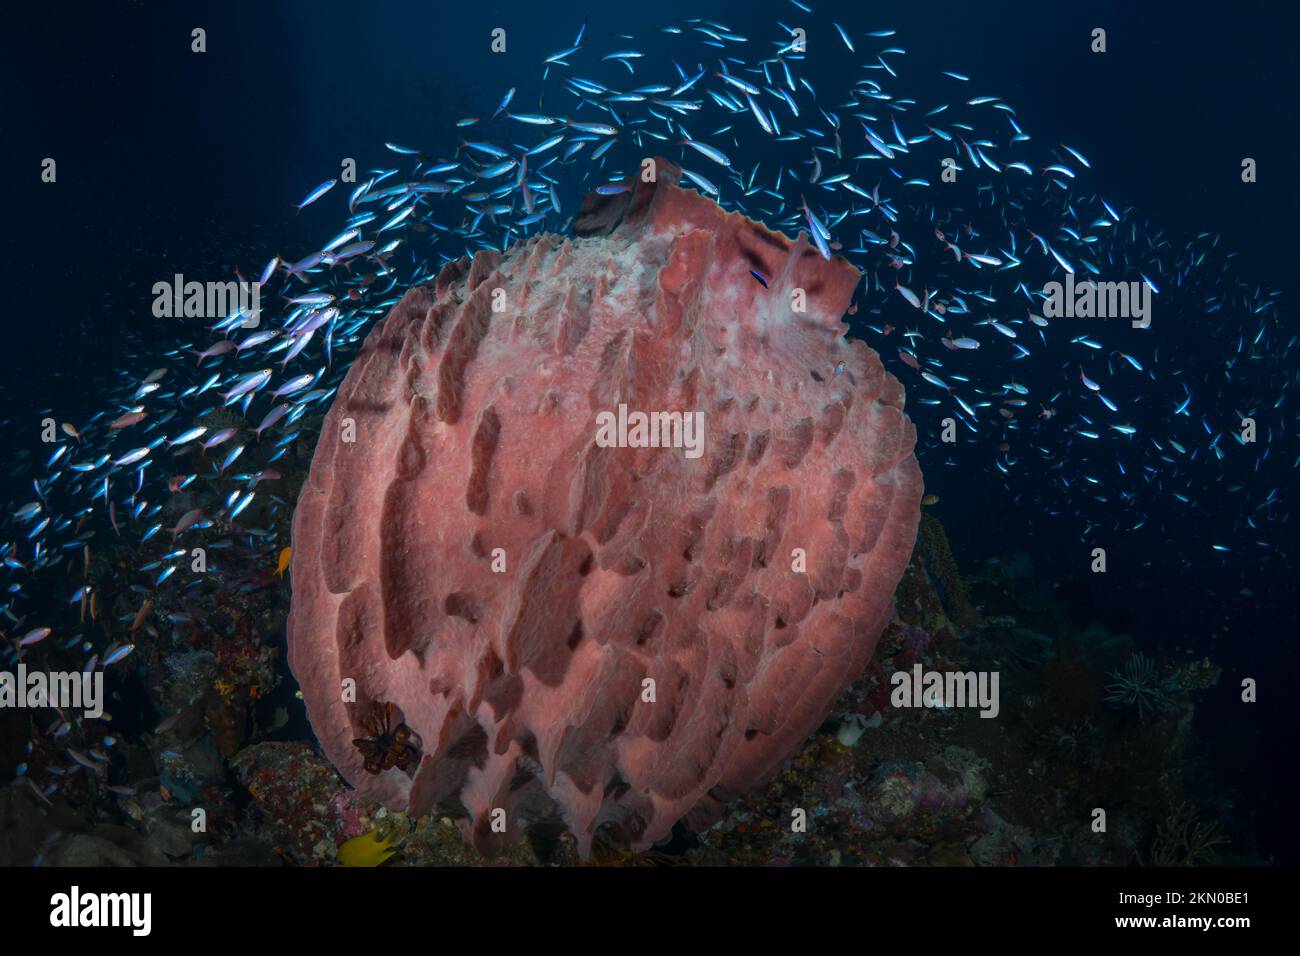 Ultimative Artenvielfalt des Indo-pazifiks mit tropischen Fischen über einem gesunden und reichlich vorhandenen Korallenriff-Ökosystem. Stockfoto